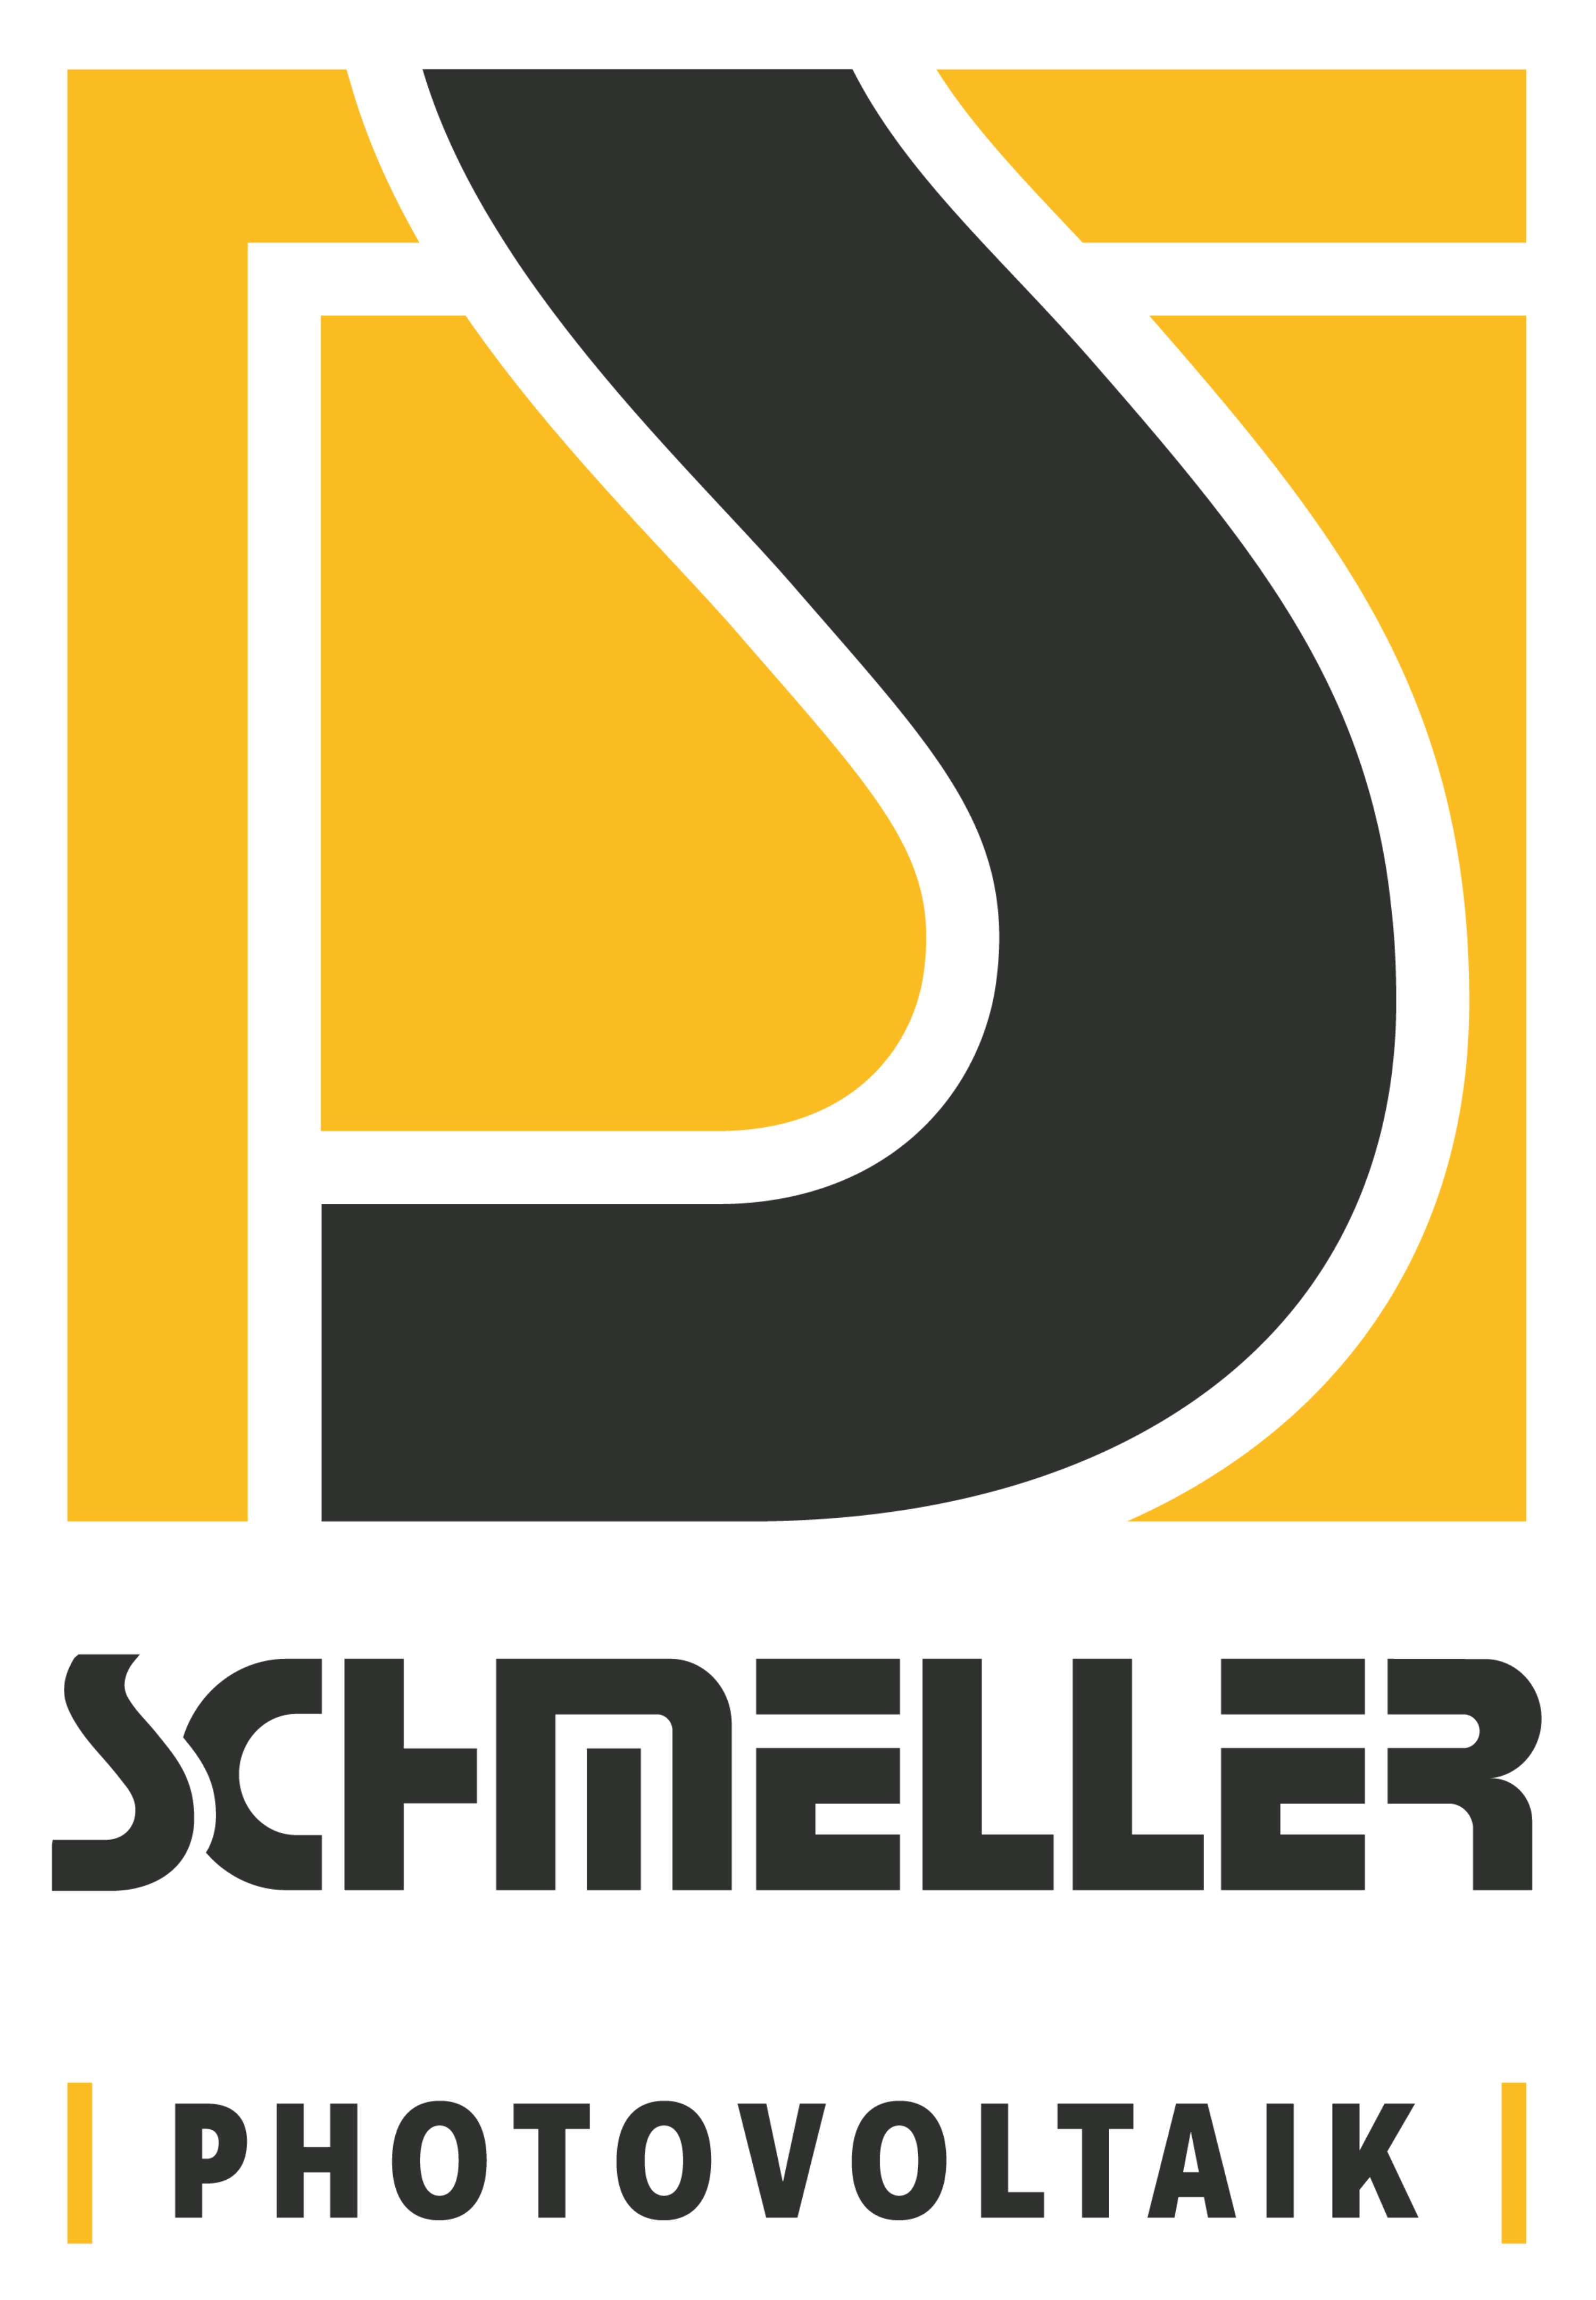 Schmeller Photovoltaik